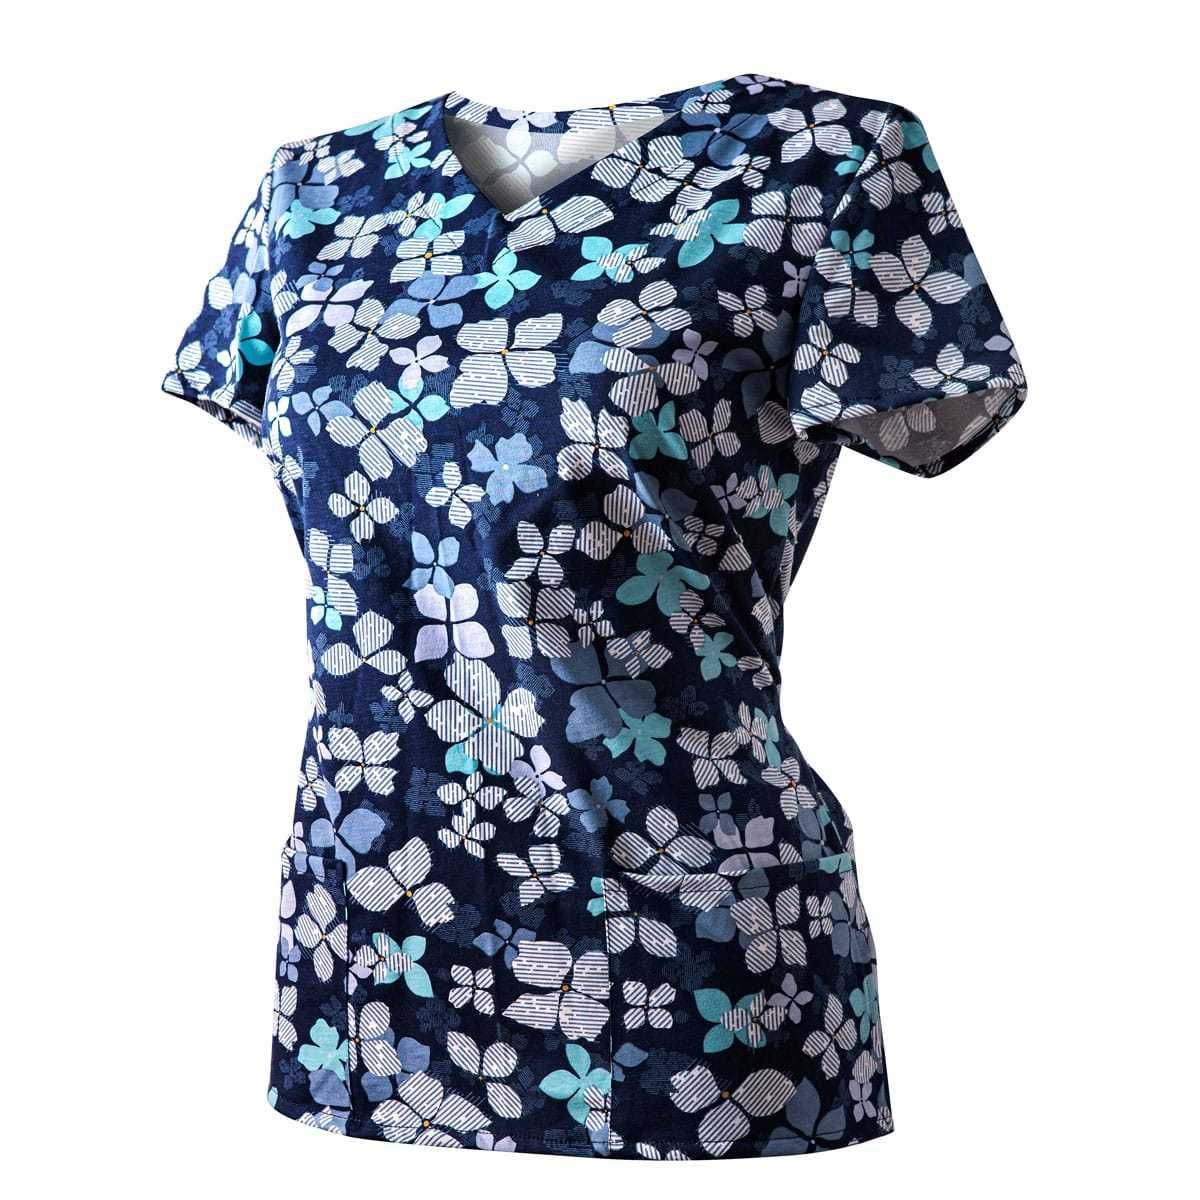 Bluza Medyczna Granatowa Koszulka Bawełniana Kwiaty niebieskie roz 38